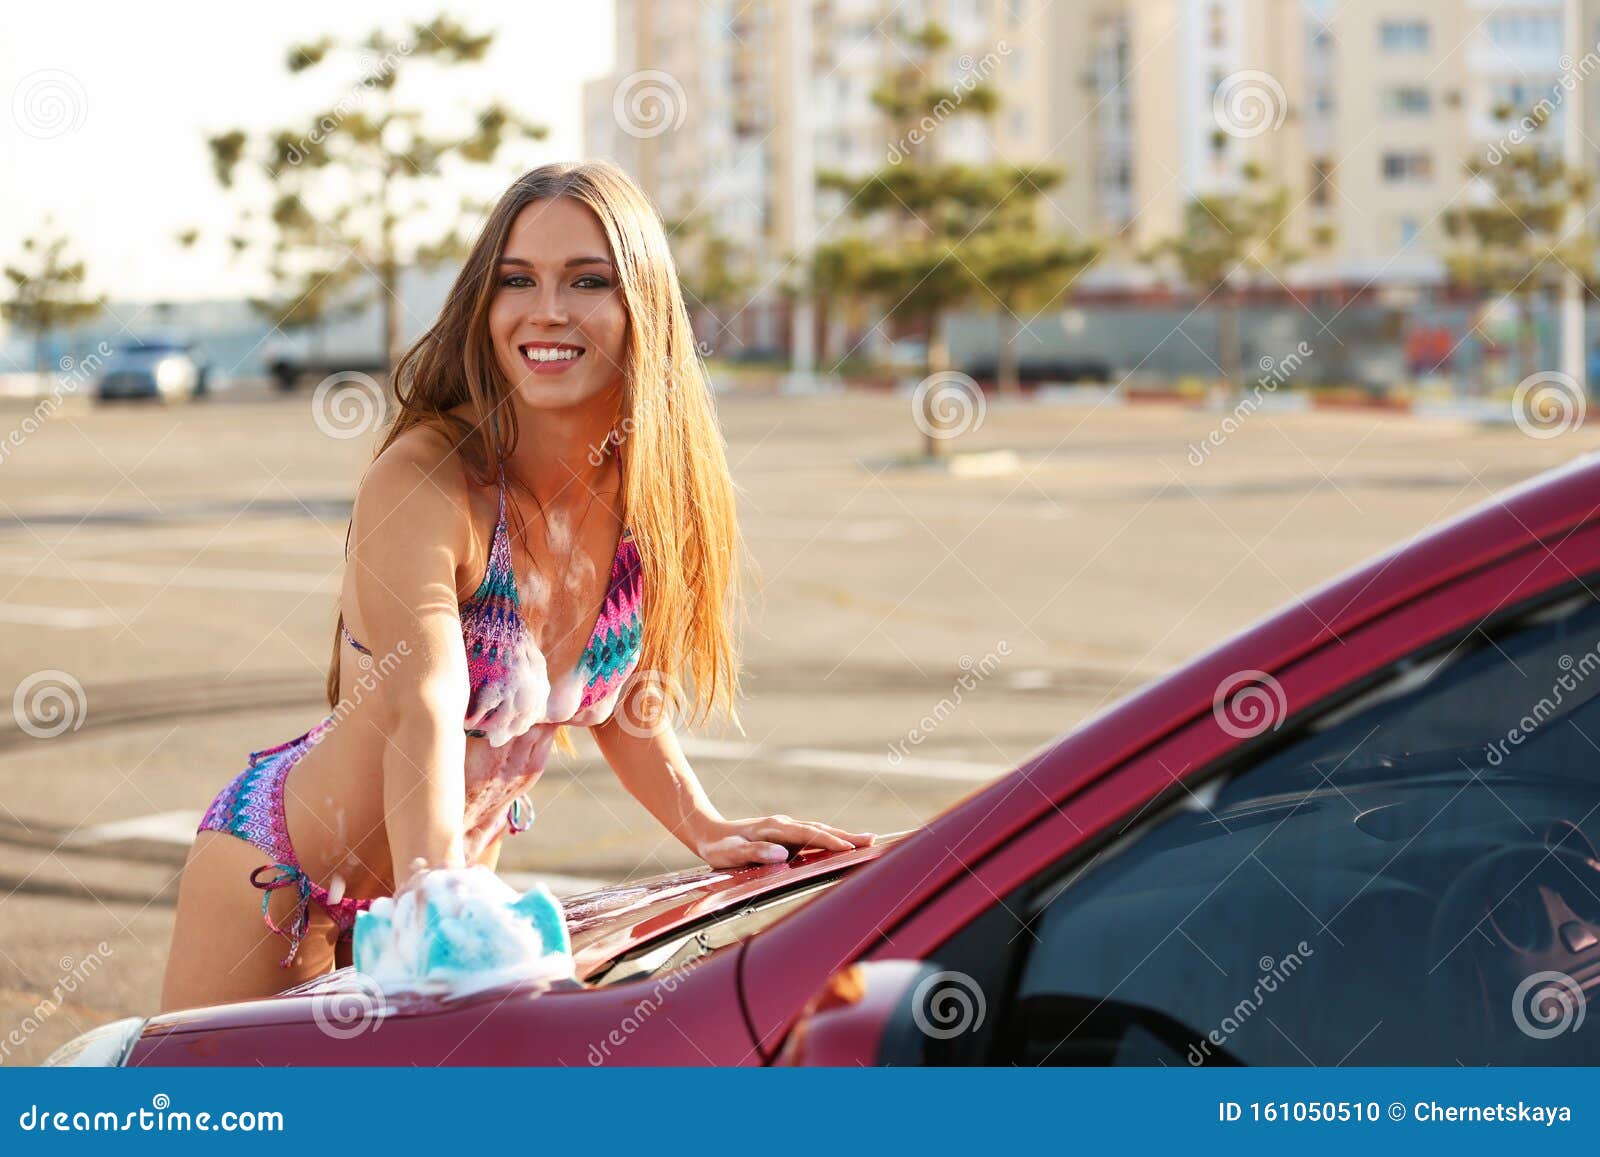 Cheetahs Topless San Diego Sexy Man Car Wash